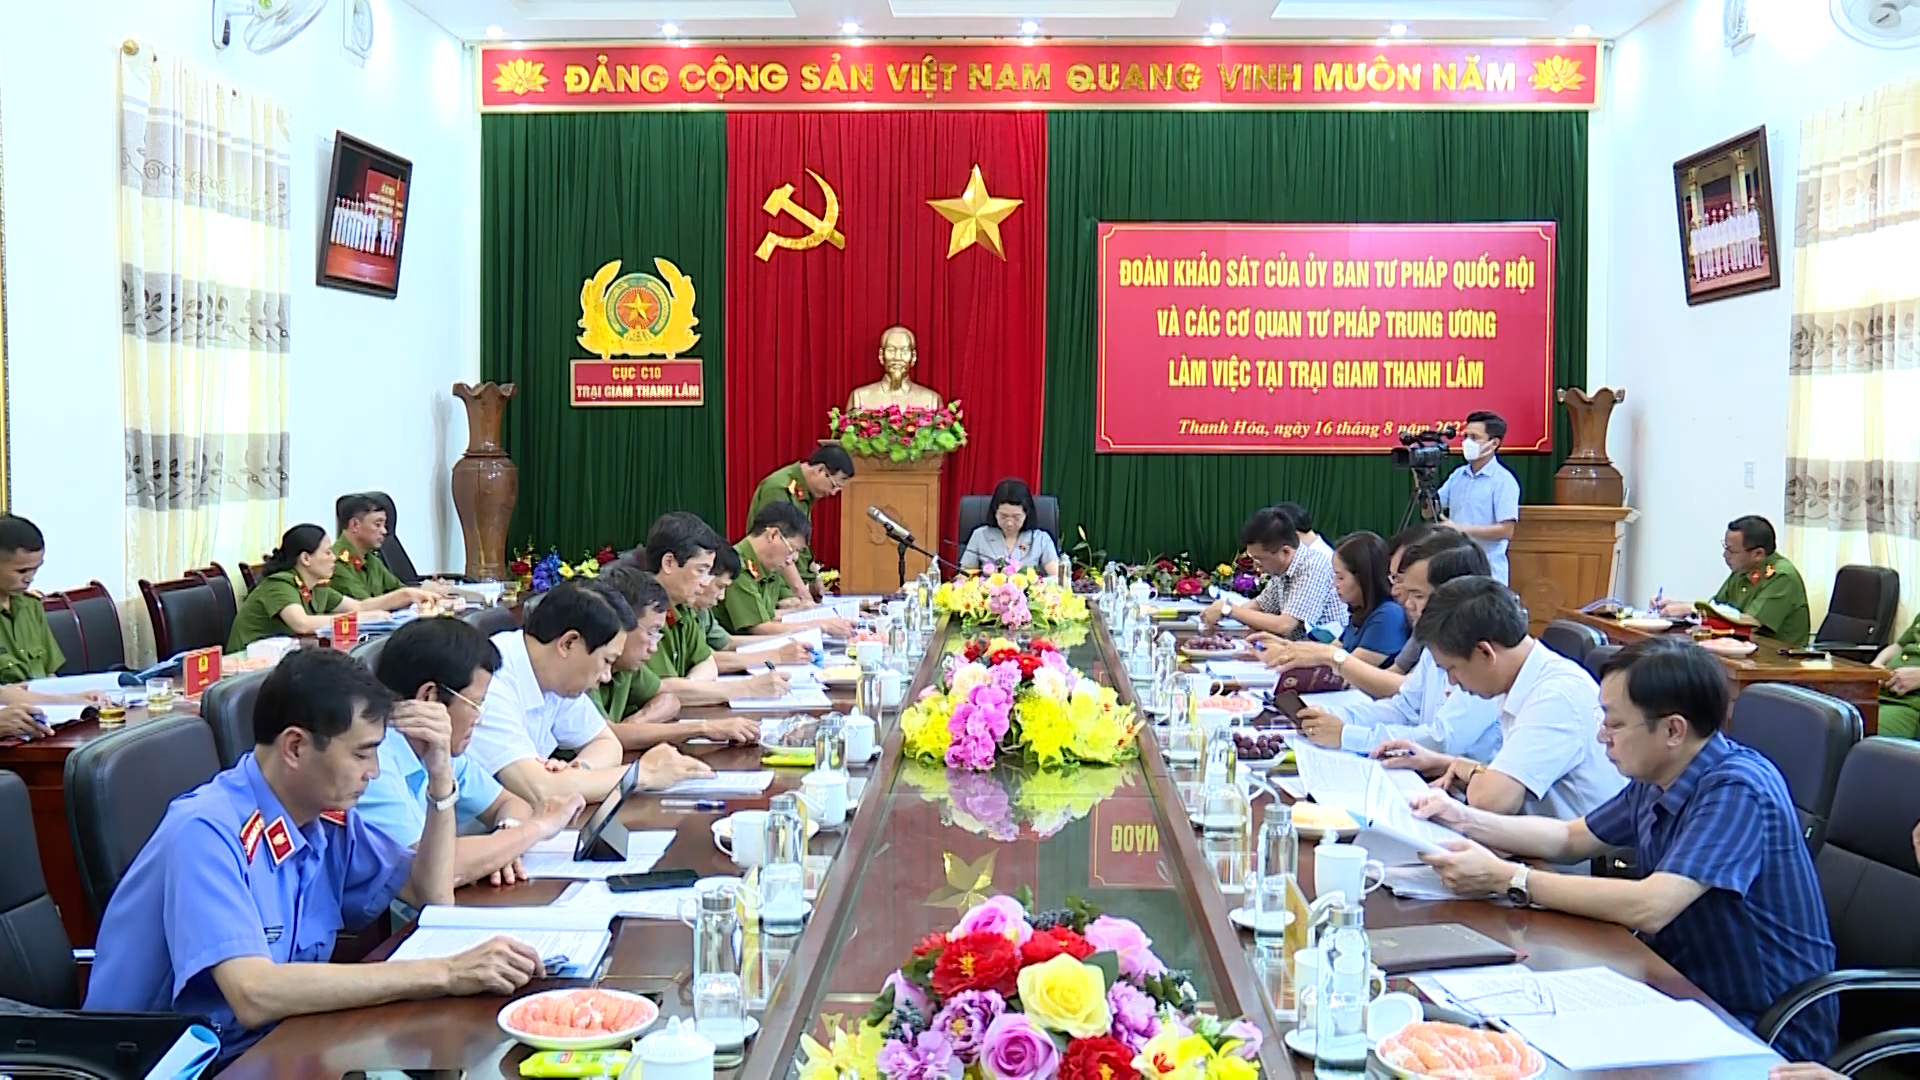 Đoàn khảo sát của Ủy ban Tư pháp Quốc hội làm việc với Trại giam Thanh Lâm - Ảnh 1.